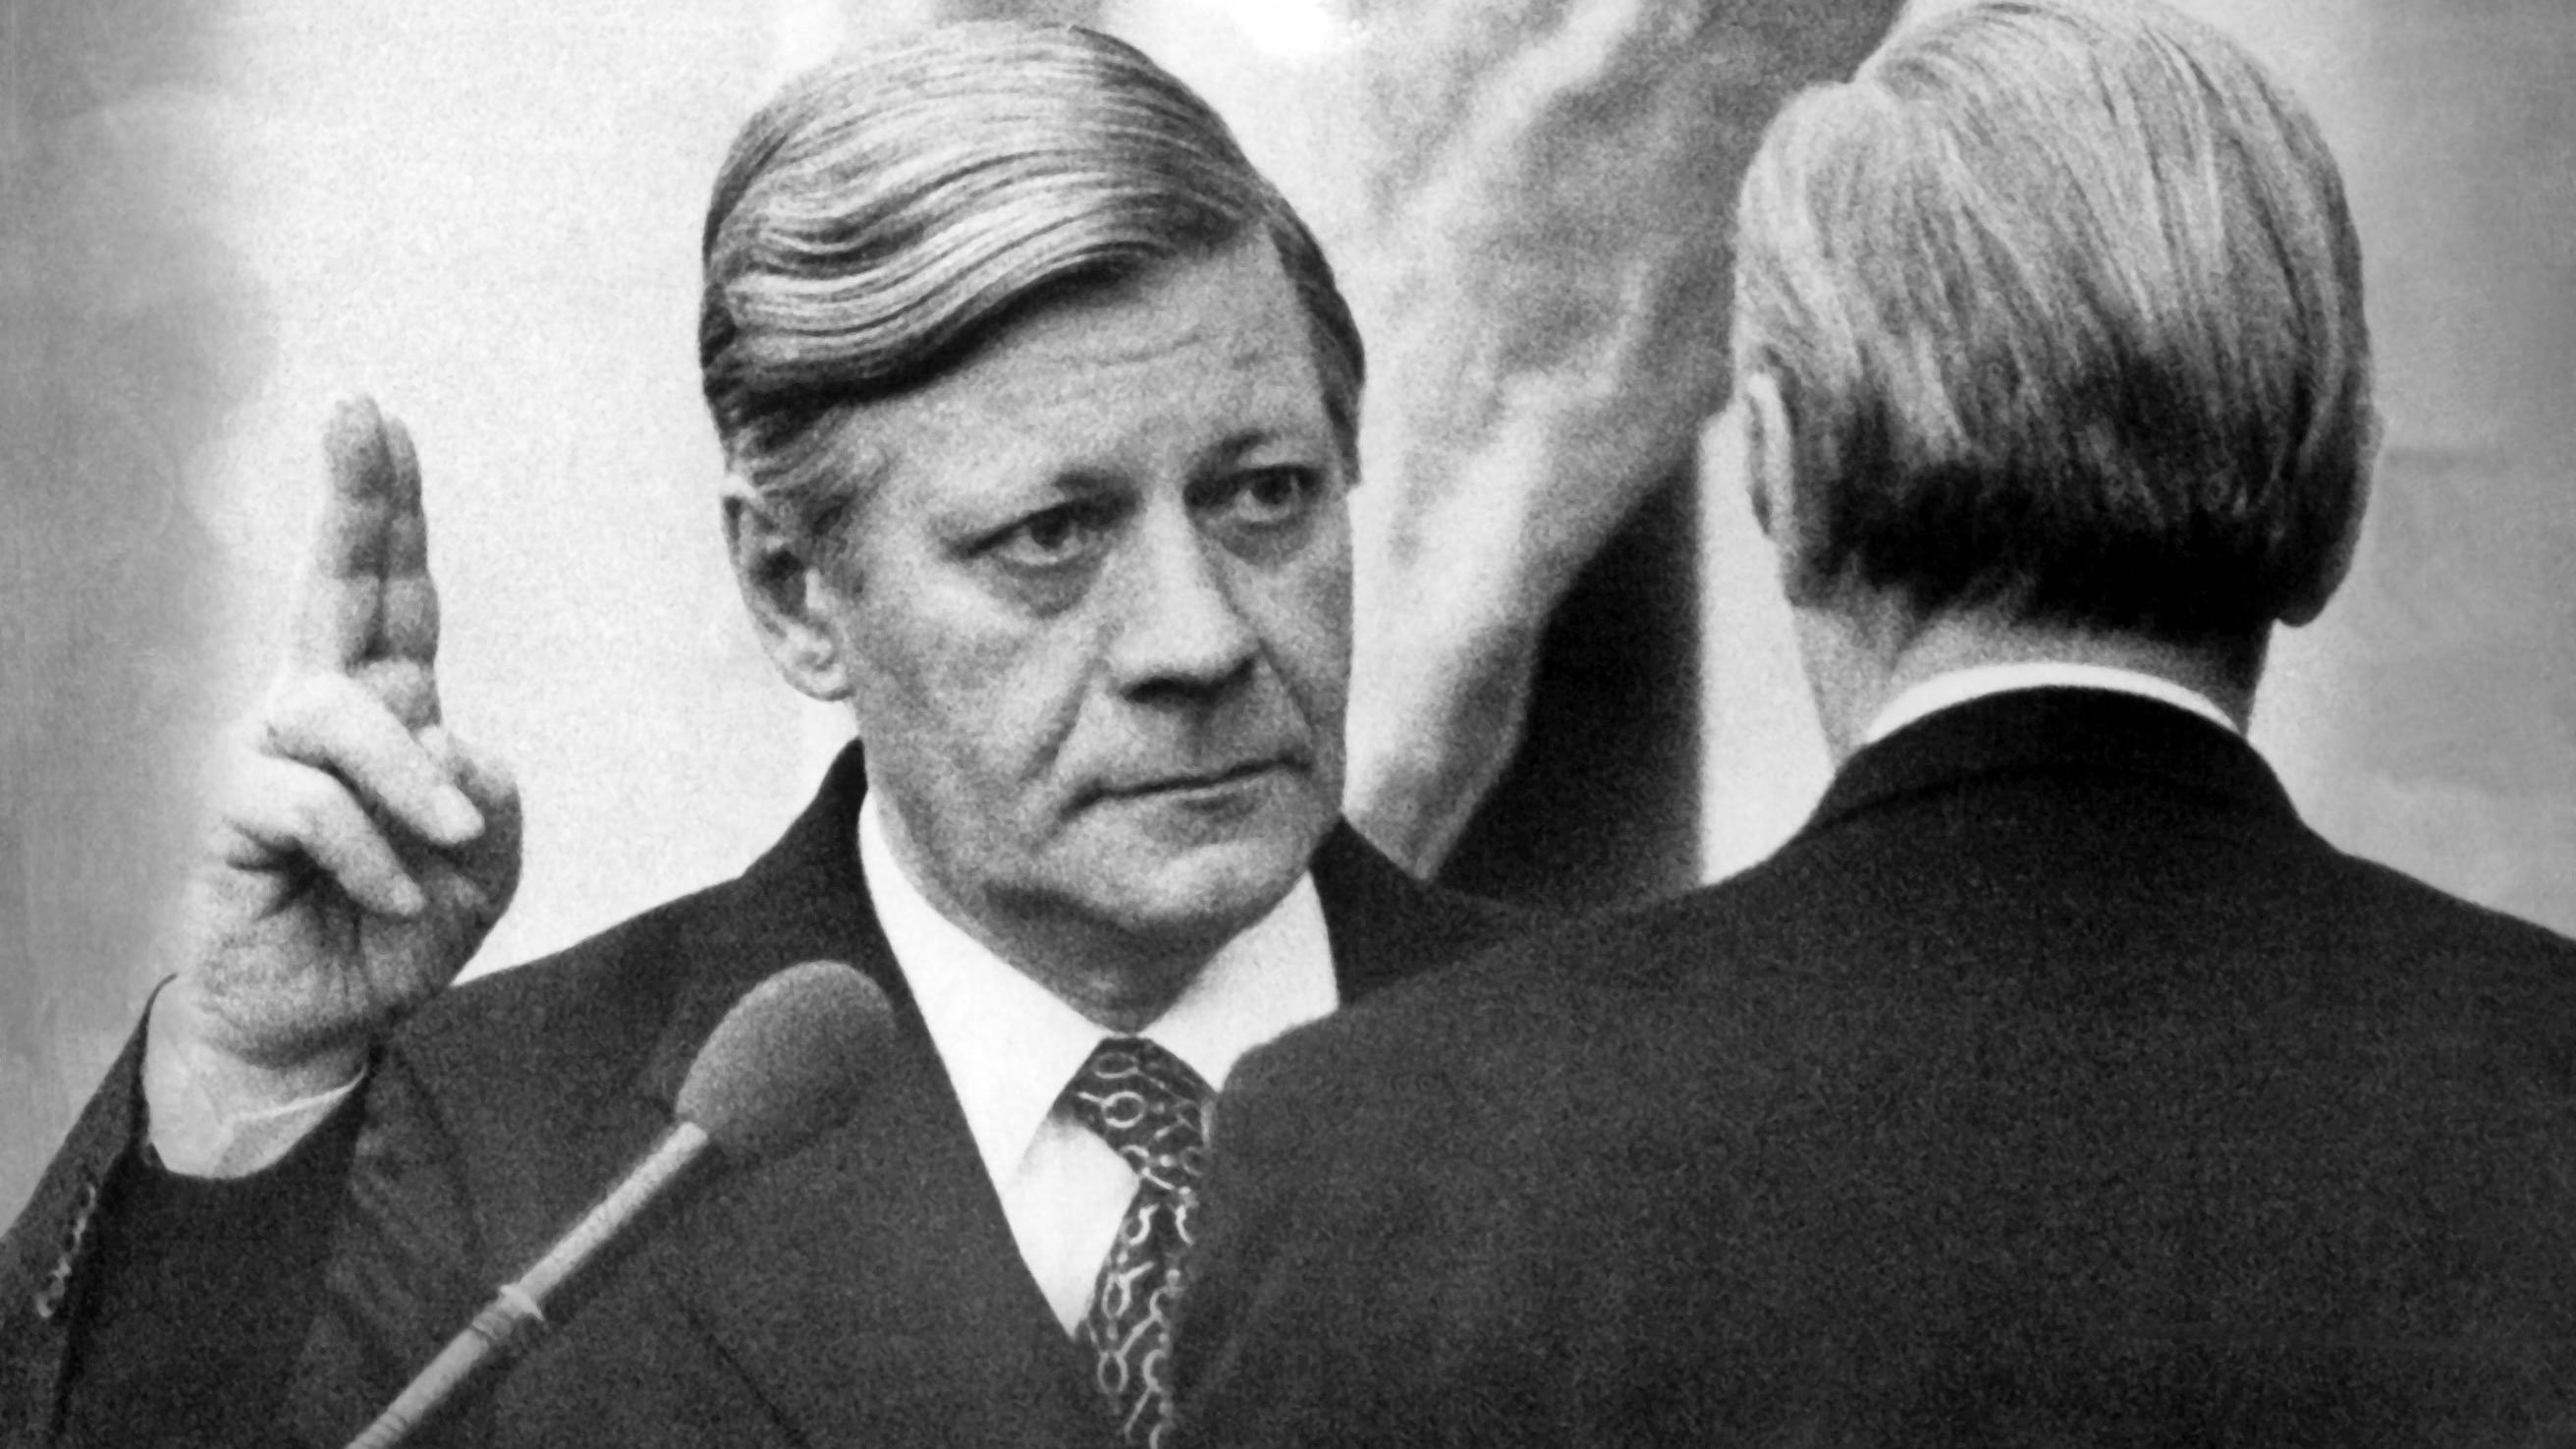  Knapp zwei Stunden nach seiner erneuten Wahl durch den Deutschen Bundestag wird Helmut Schmidt (l, SPD) am 15.12.1976 von Parlamentspräsident Karl Carstens als Bundeskanzler vereidigt.